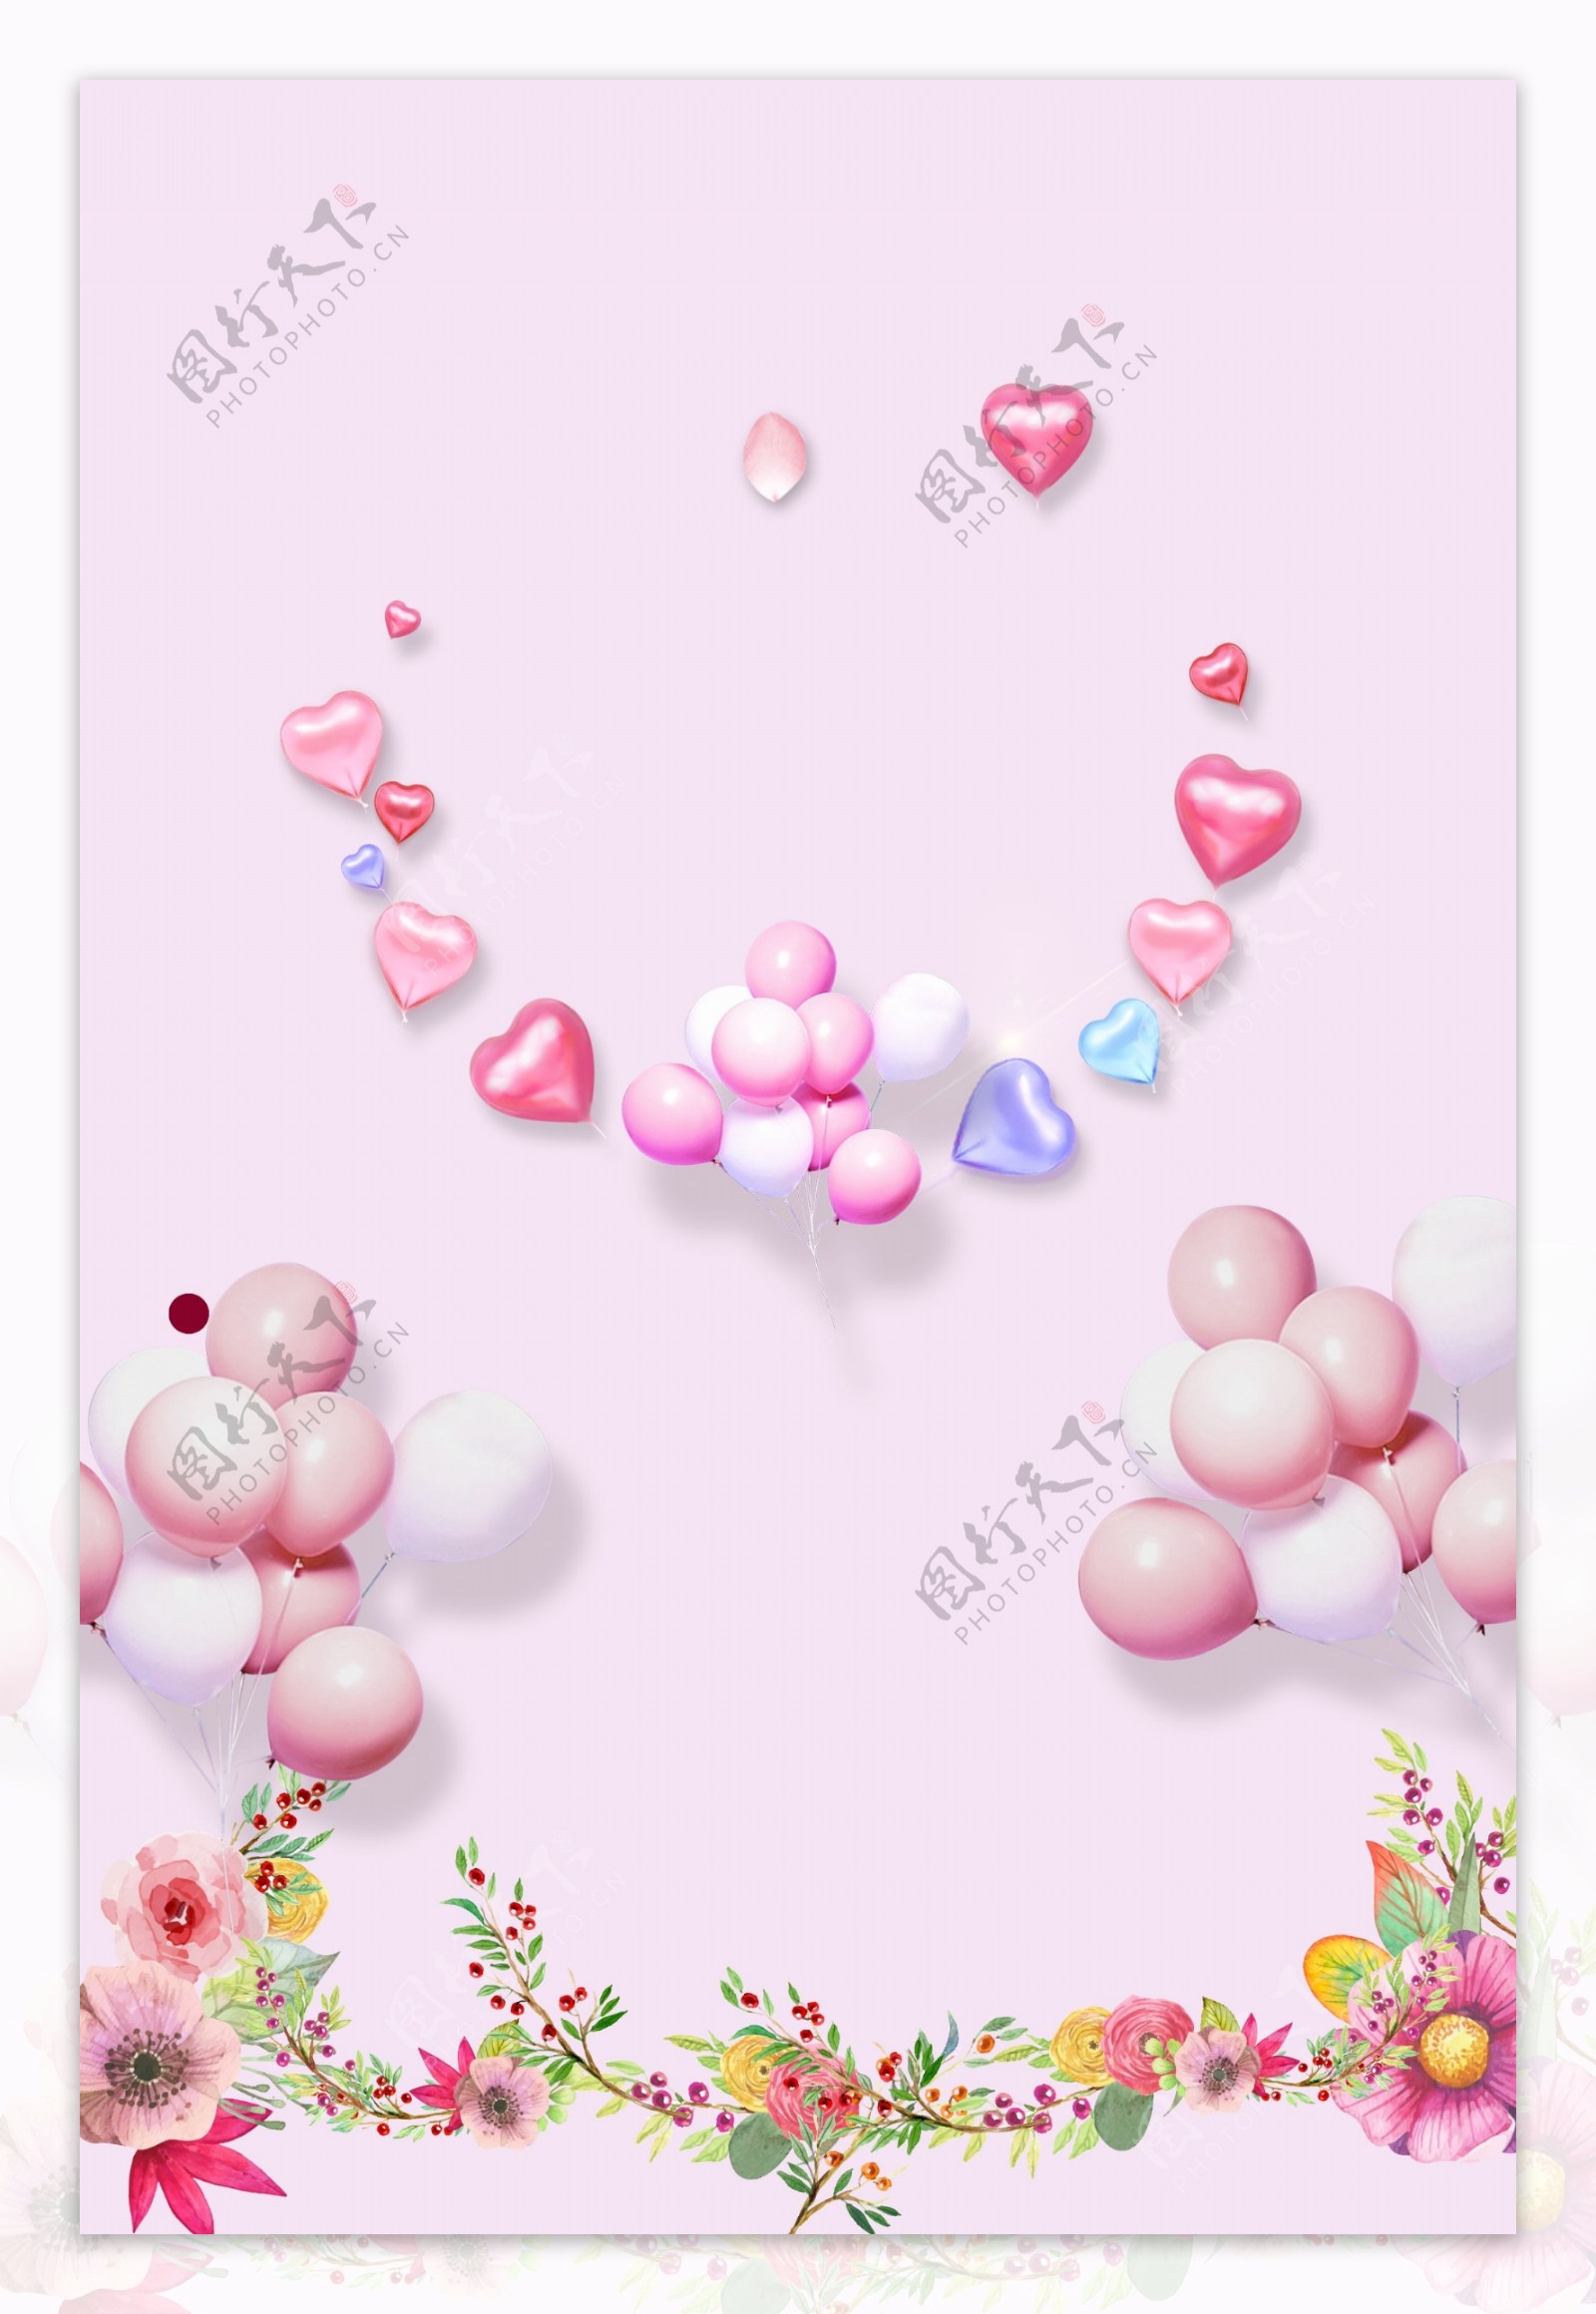 简约时尚粉色情人节海报背景